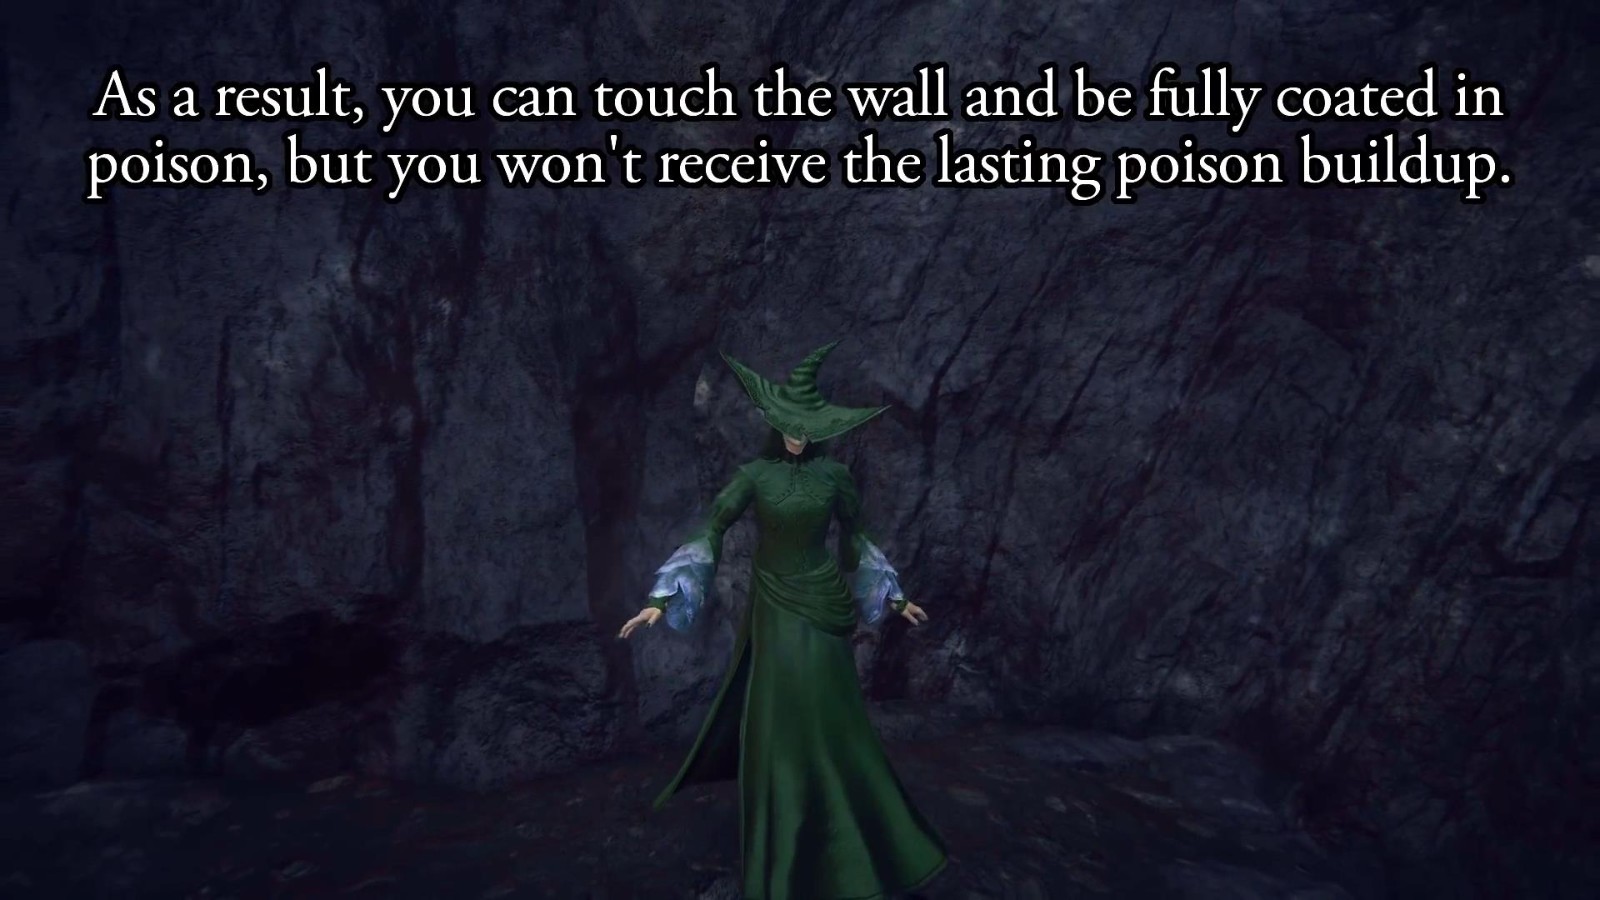 《艾尔登法环》毒墙Bug出现 将玩家瞬间染成绿色